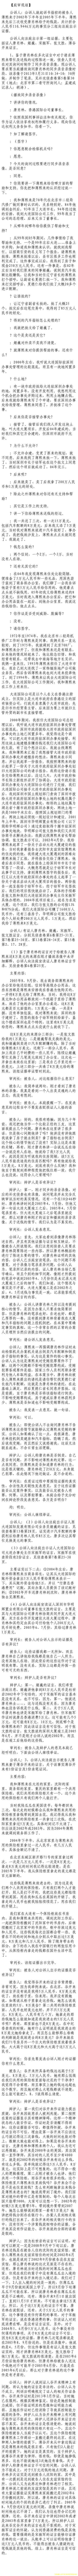 济南市中级法院官方微博公布的8月22日庭审现场记录（4）